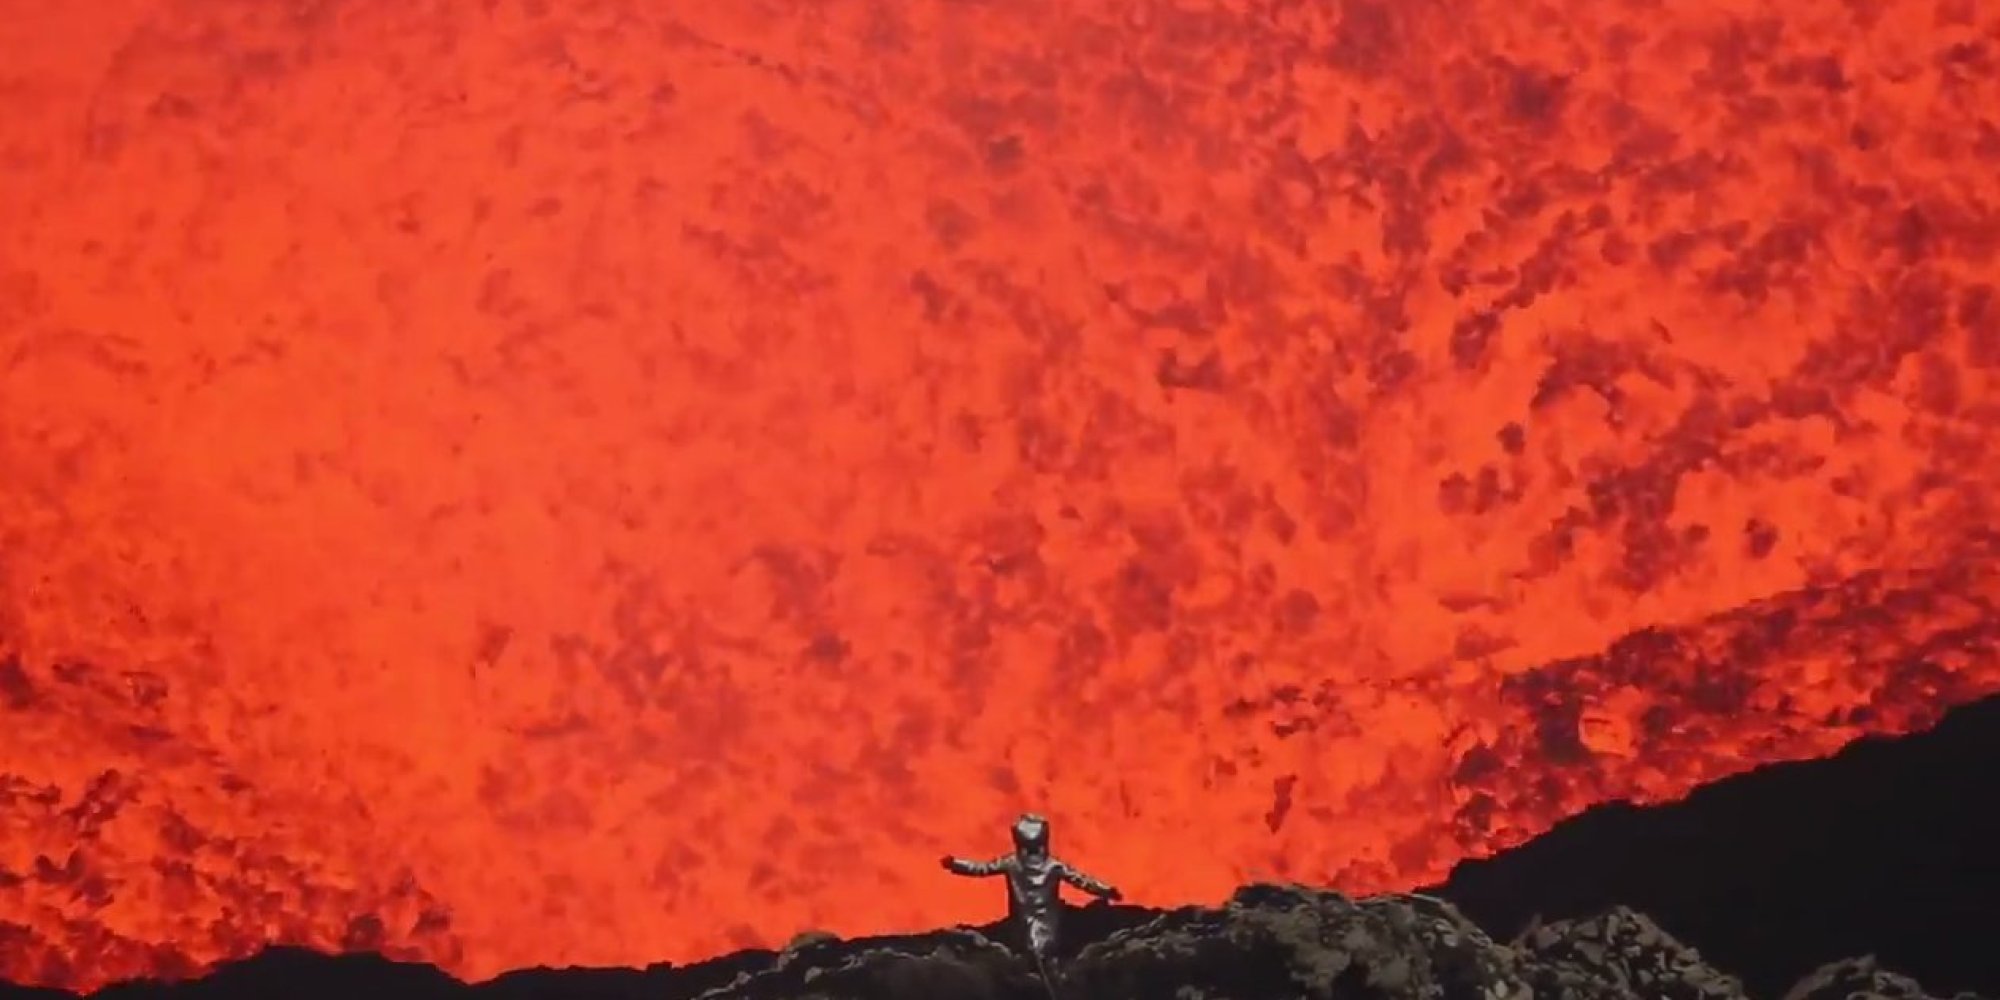 Graba impresionantes imágenes entrando al cráter de un volcán en erupción